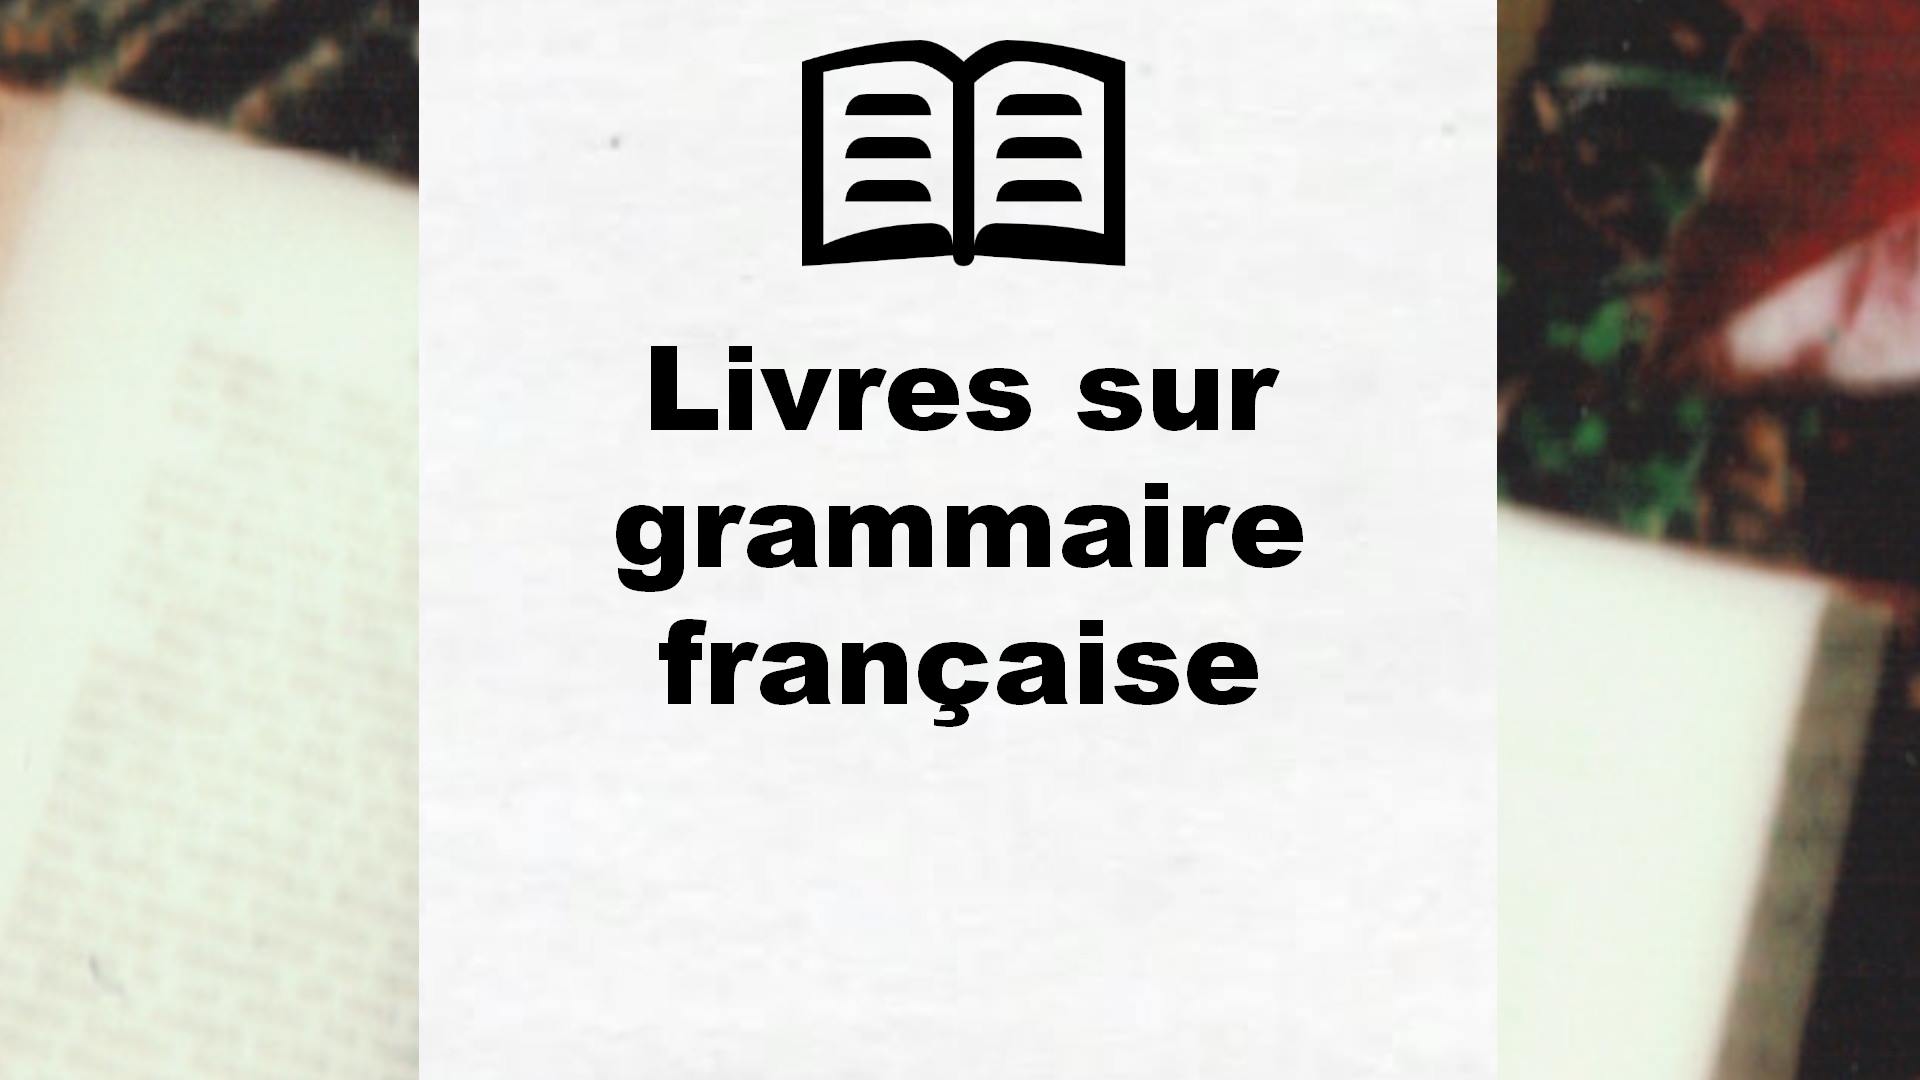 Livres sur grammaire française